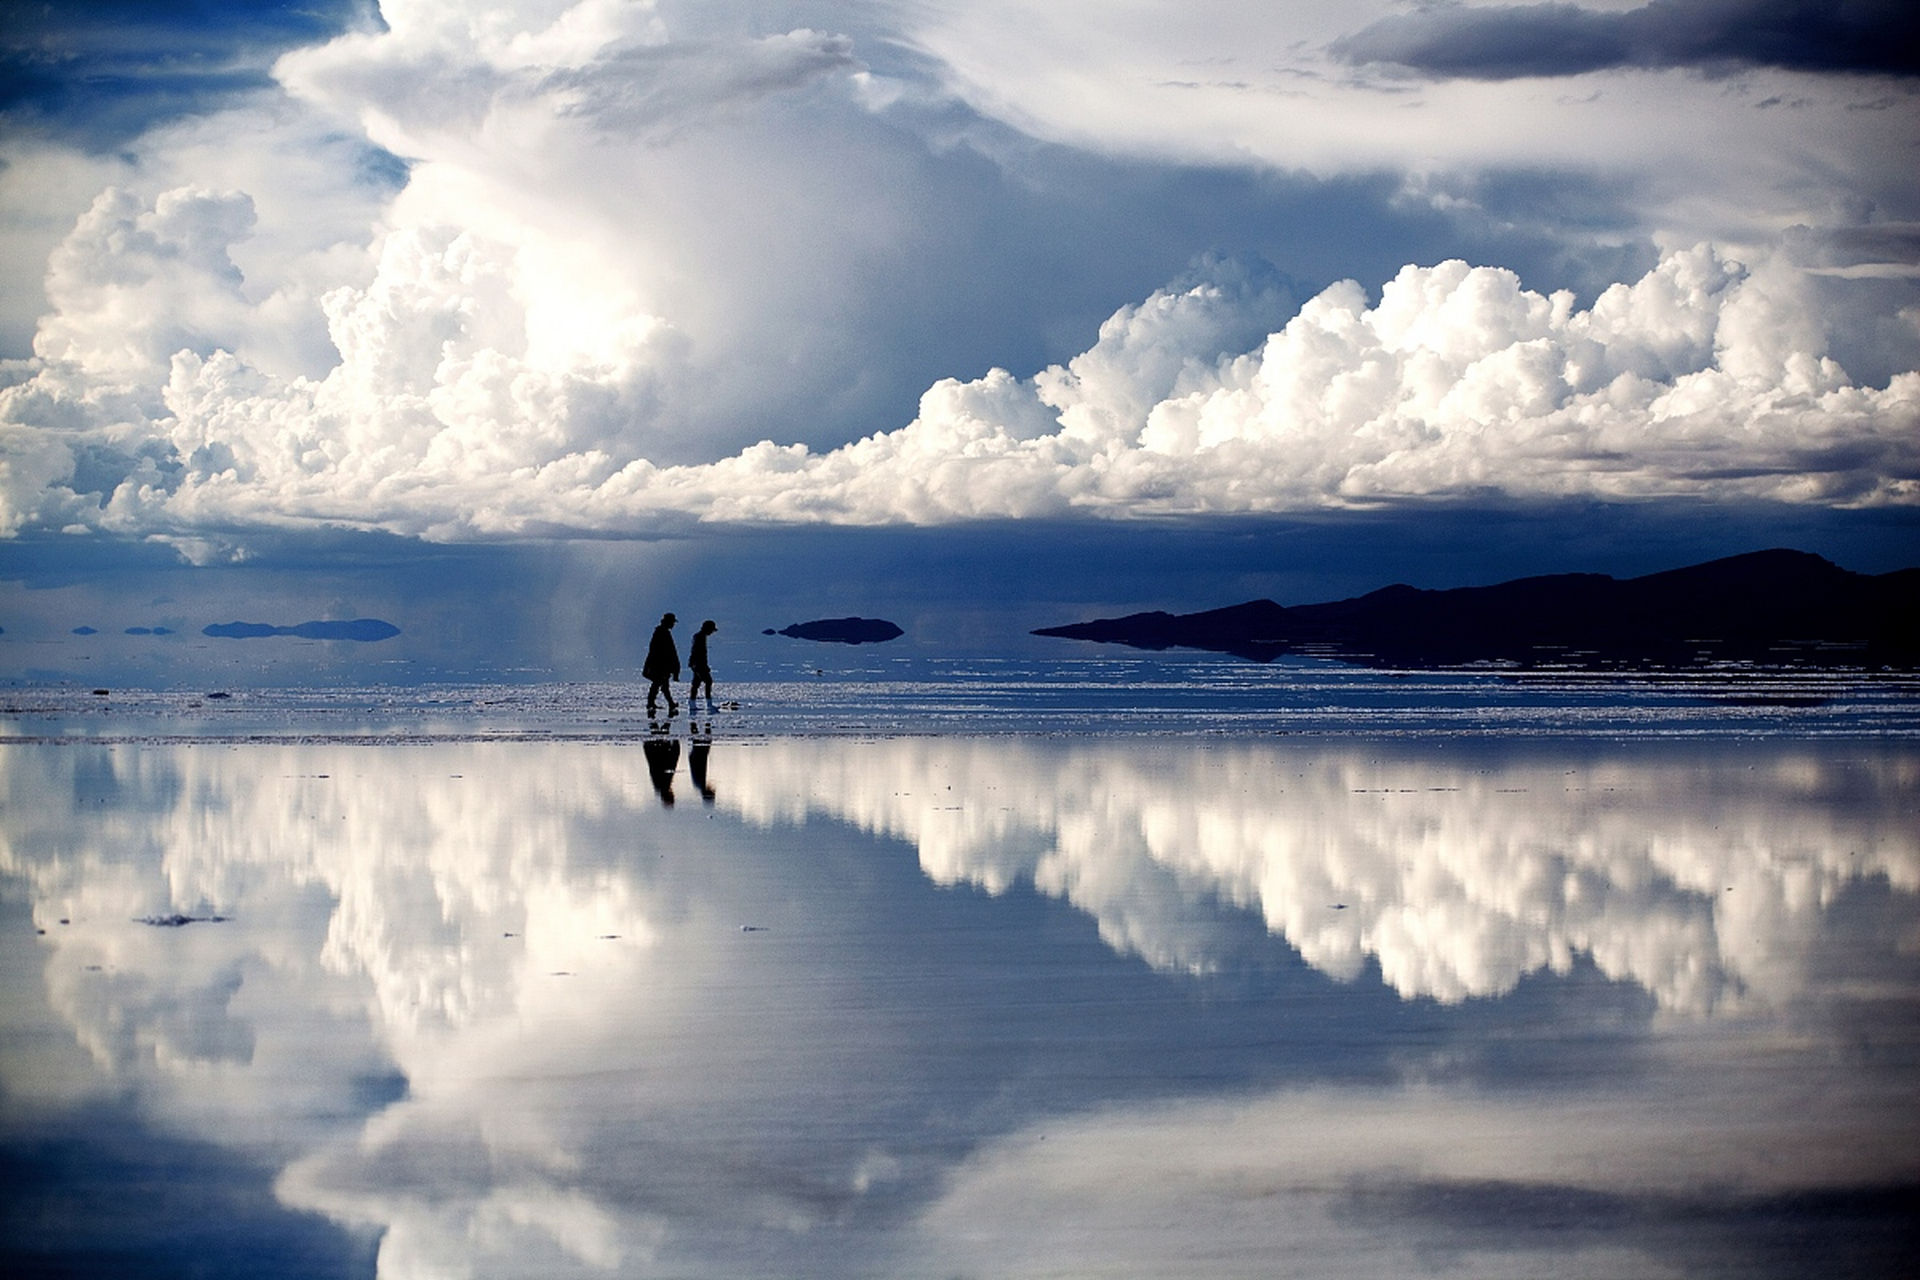 天空之镜是对玻利维亚乌尤尼盐沼的美称,是世界上最大的盐沼